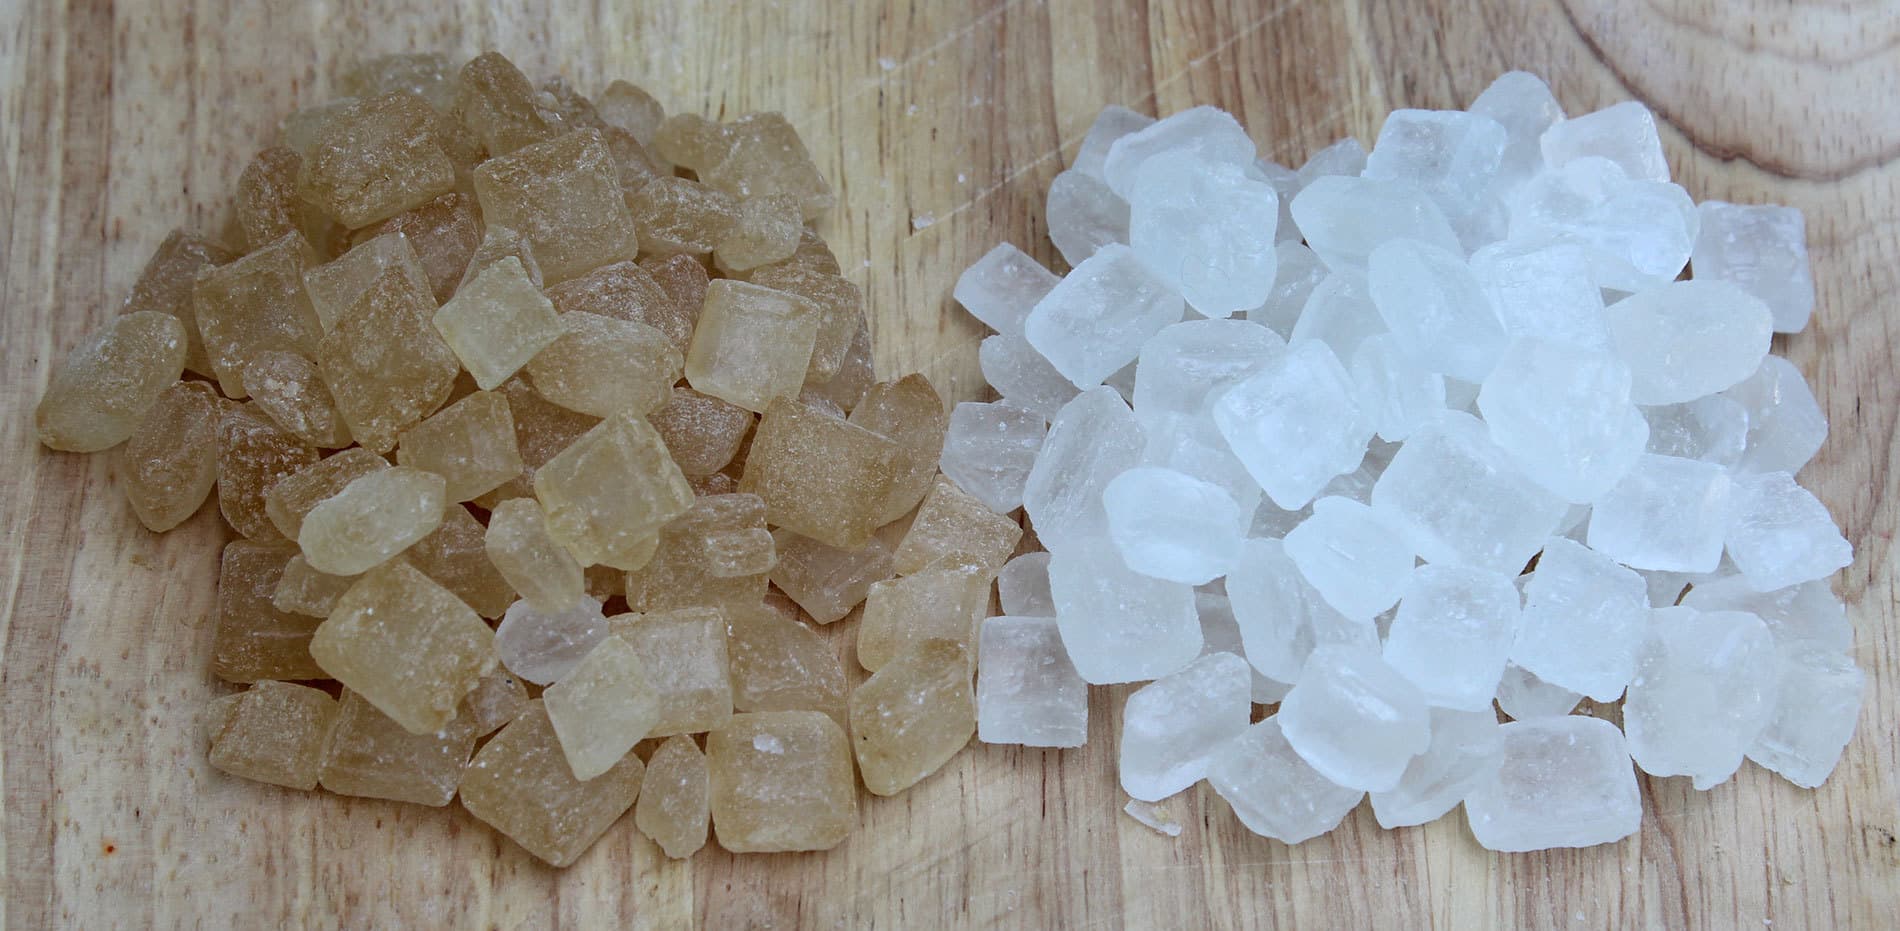 Kőcukor és granulált cukor, melyik az egészségesebb?